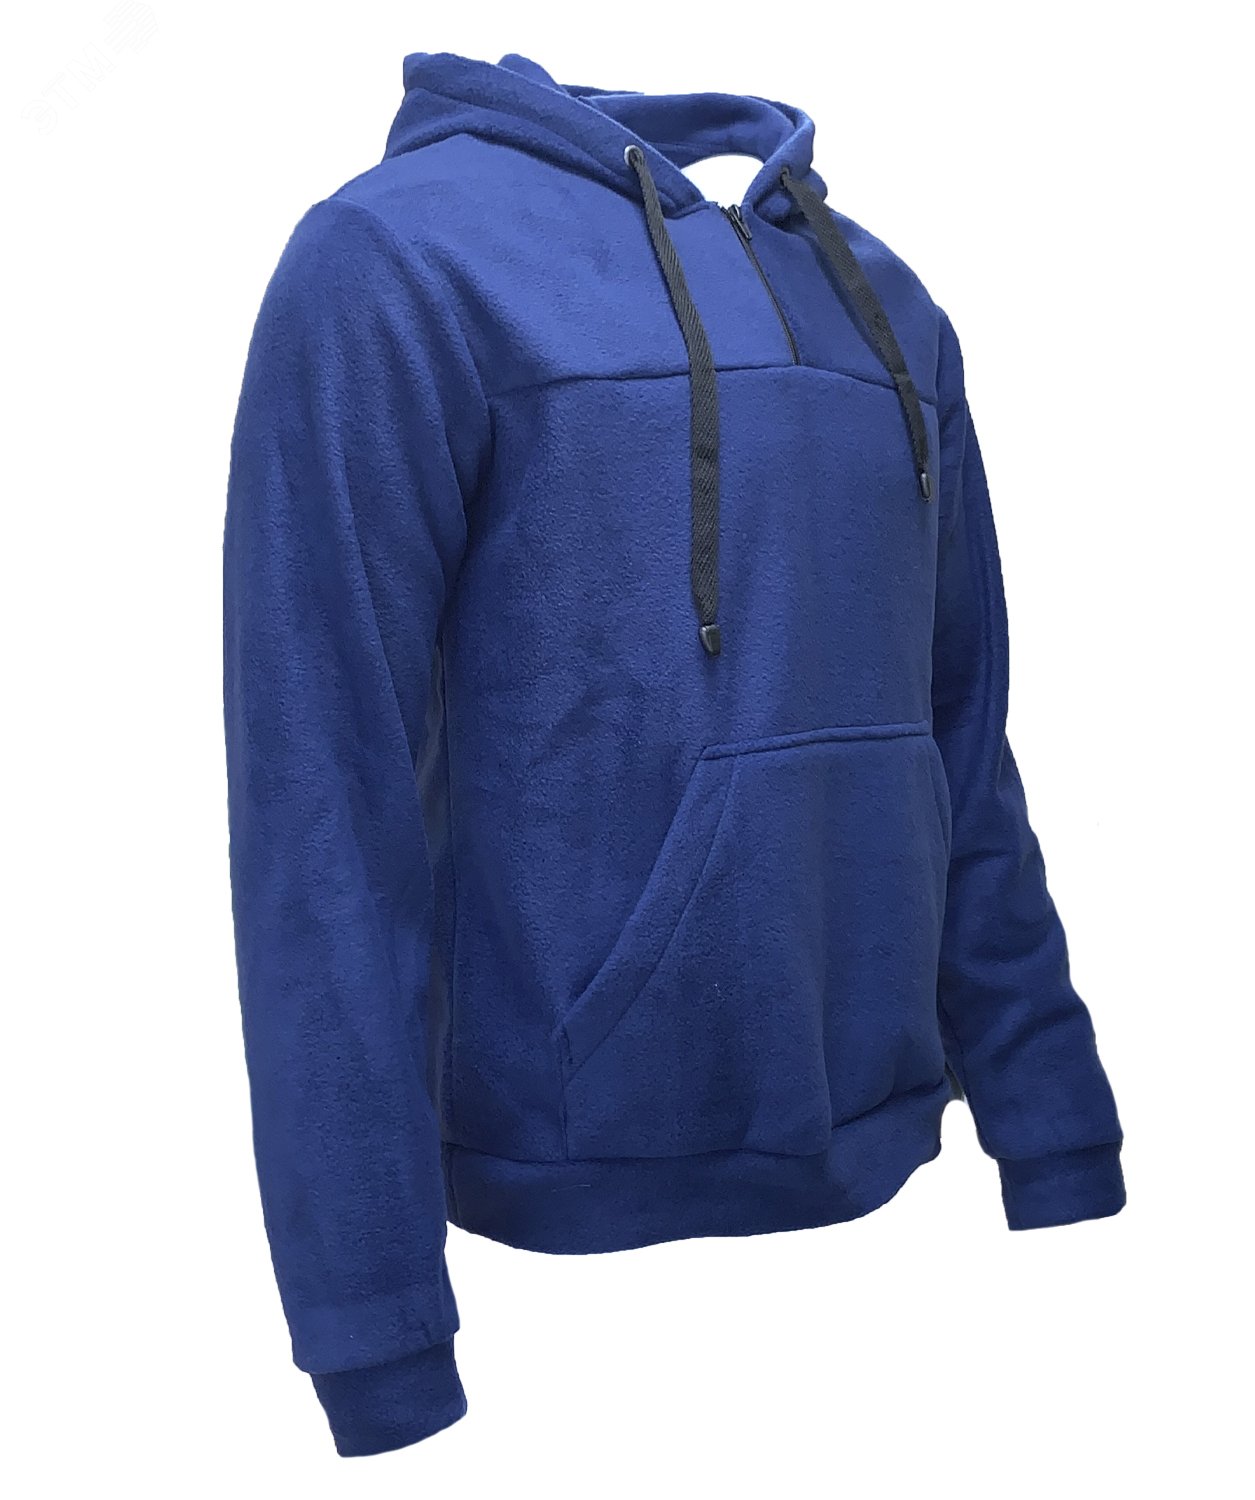 Куртка Etalon Travel TM Sprut с капюшоном, цвет темно-синий 52-54 104-108/182-188 130793 Эталон-Спецодежда - превью 2